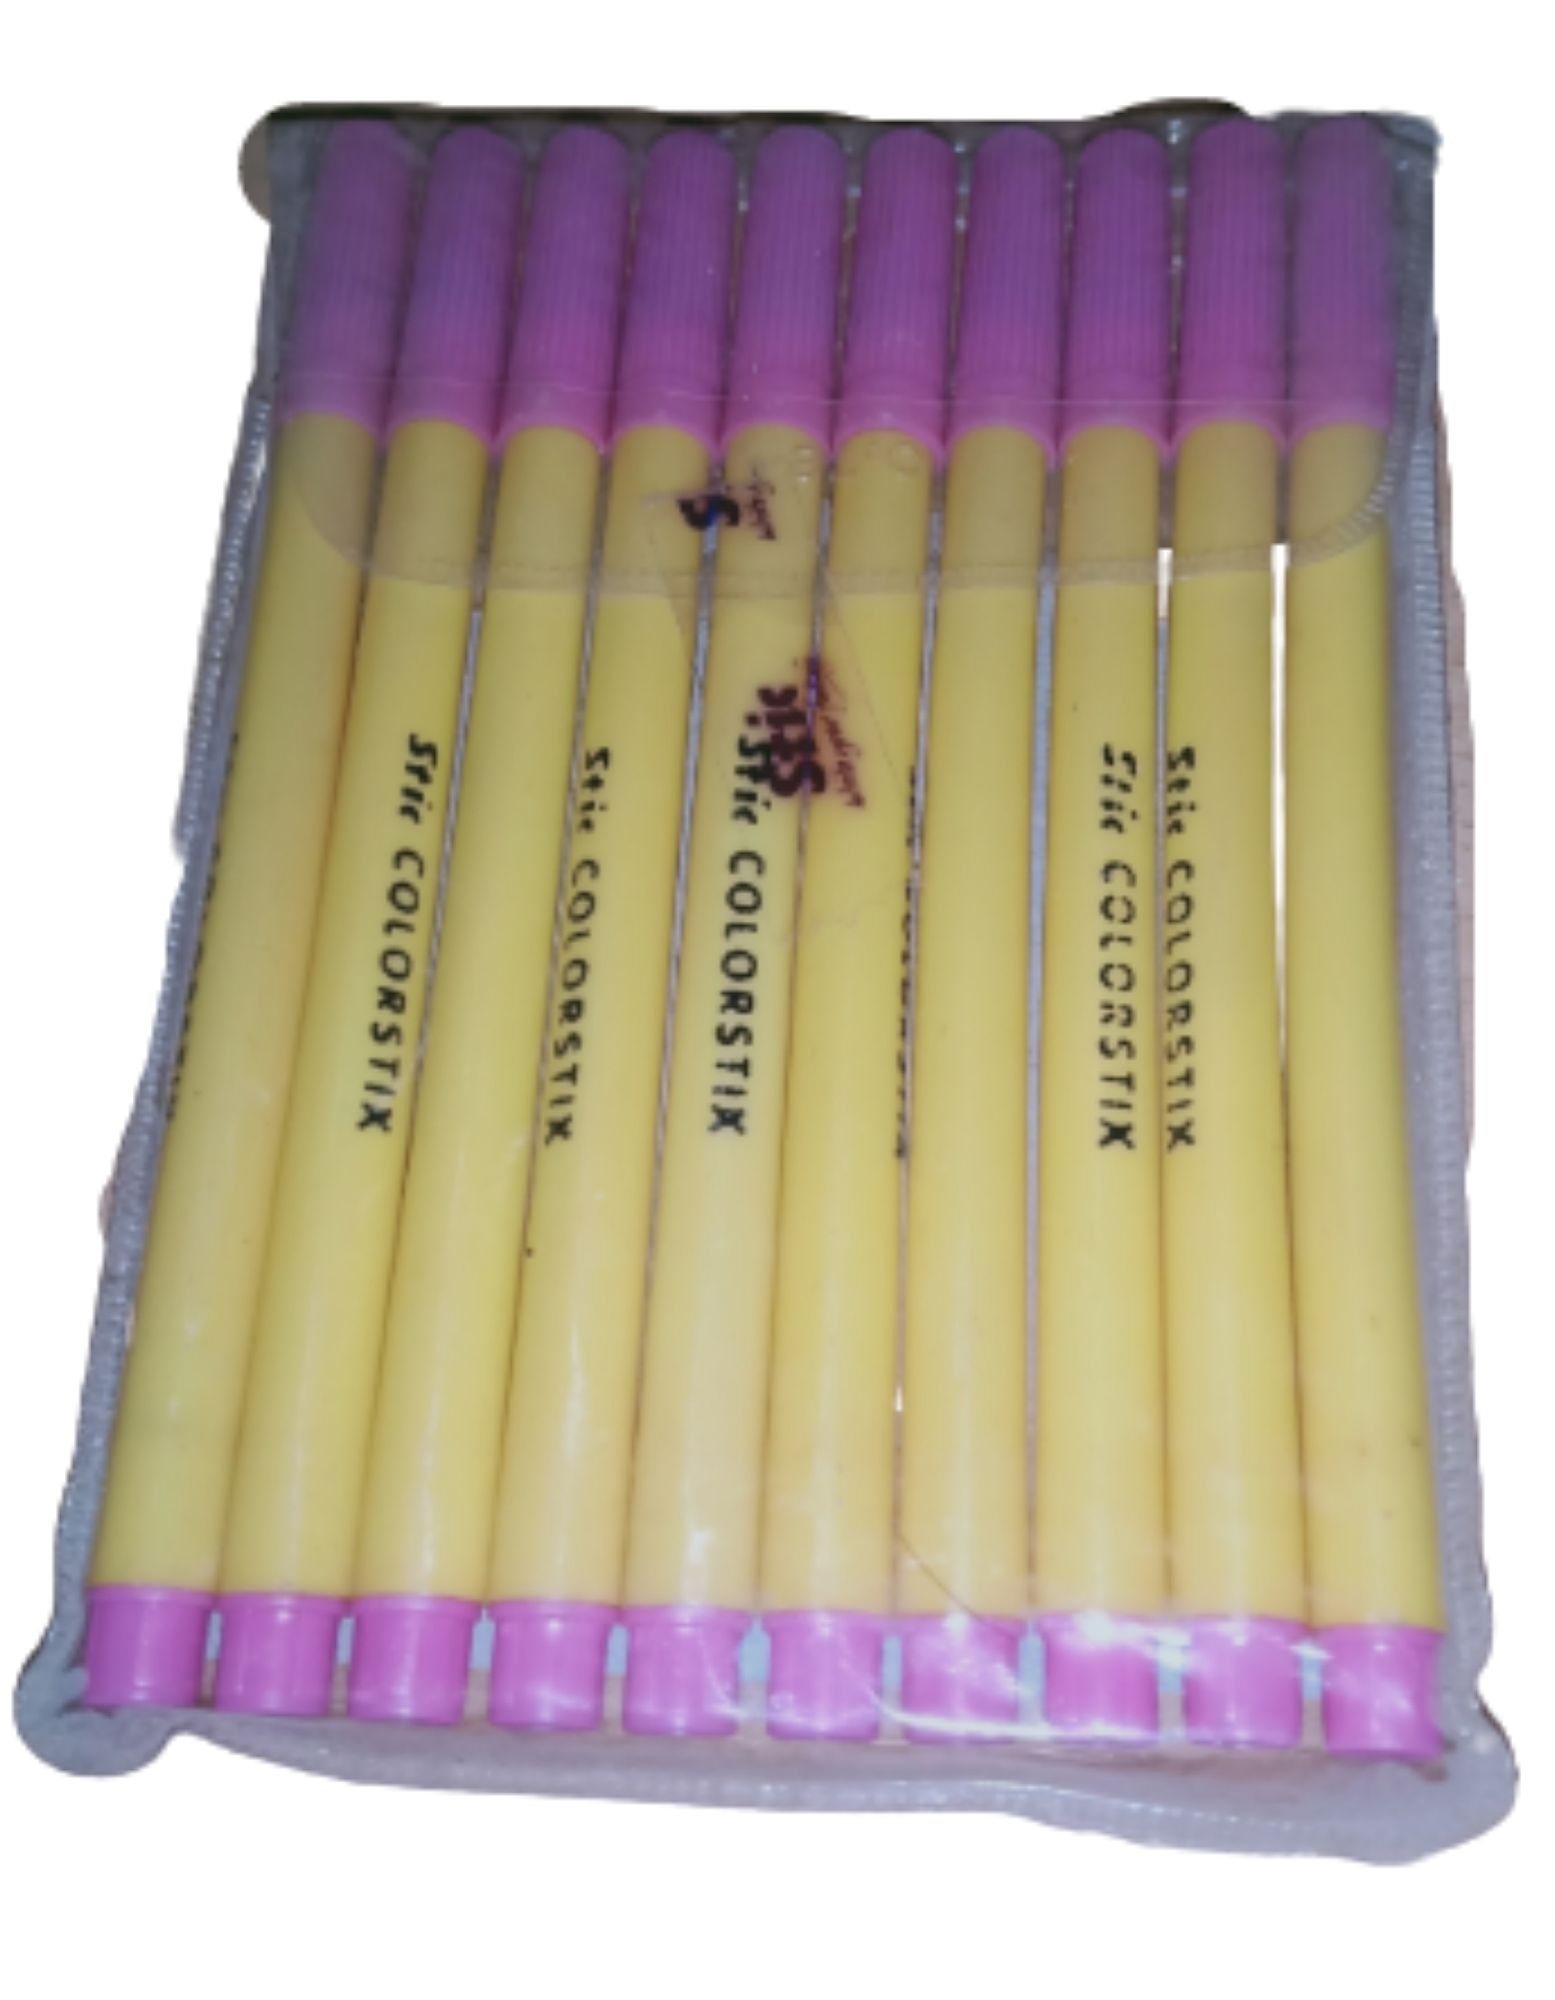 Colorstix Pink Sketch Pen (Water Color Pens, 10 Pc) Stic Brand